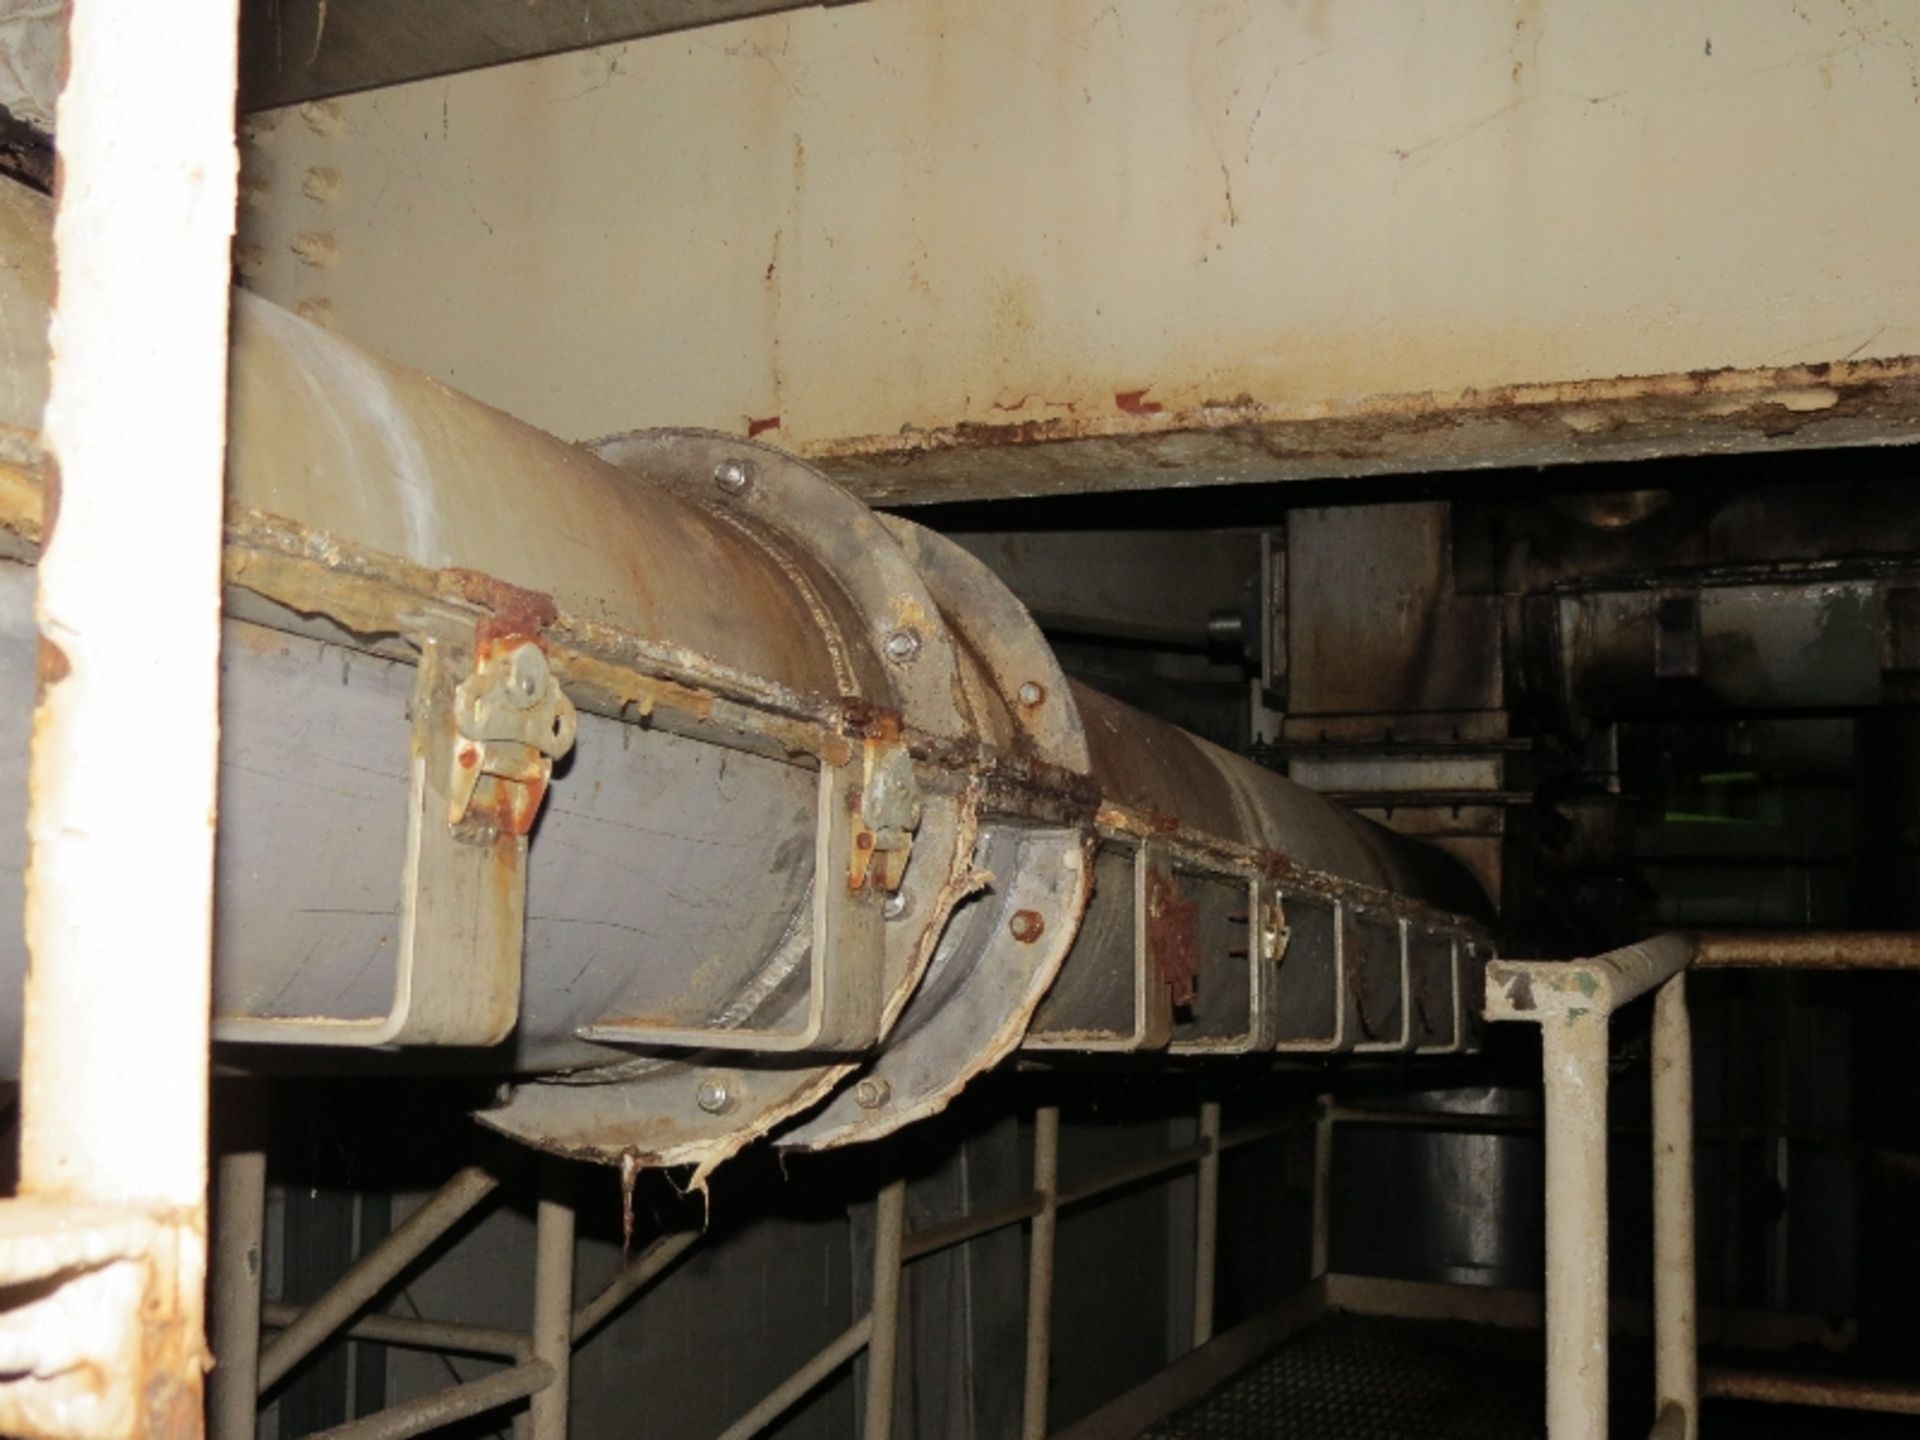 Stainless Steel Screw Conveyor 24' x 14"" diameter / 5HP - Image 4 of 5